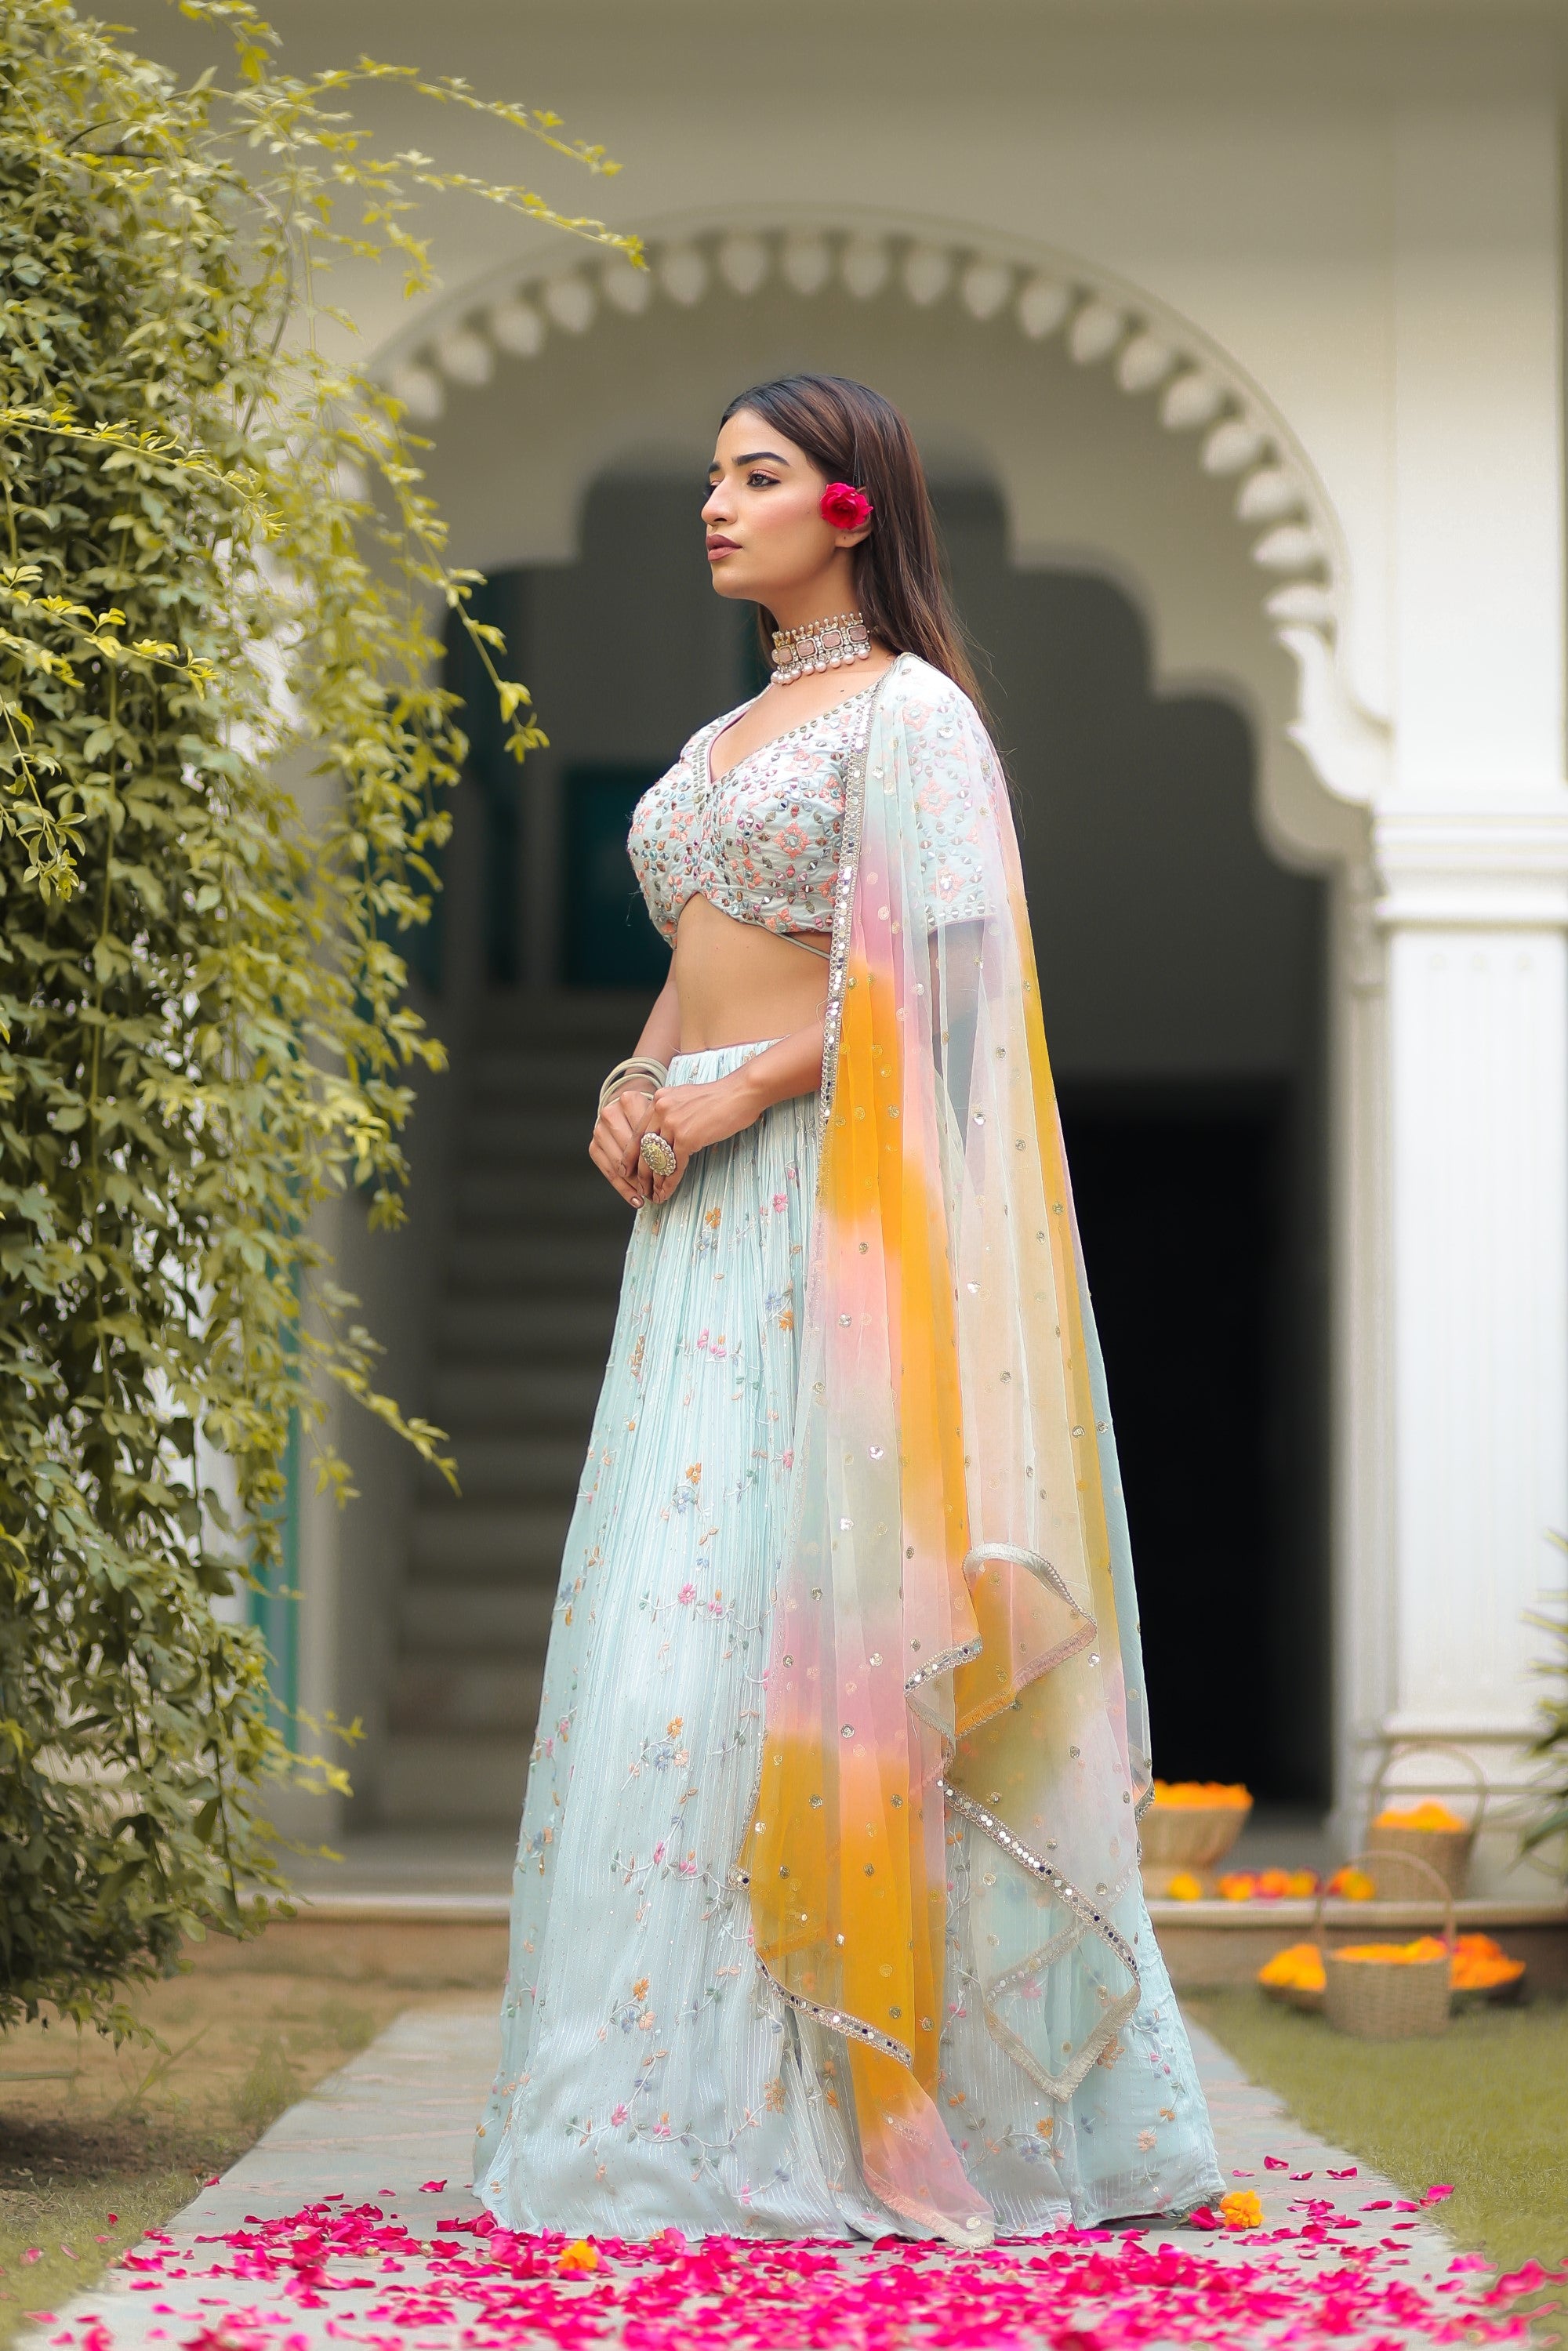 Red Net #LehengaCholi with Dupatta | Red lehenga choli, Indian wedding  dress, Indian outfits